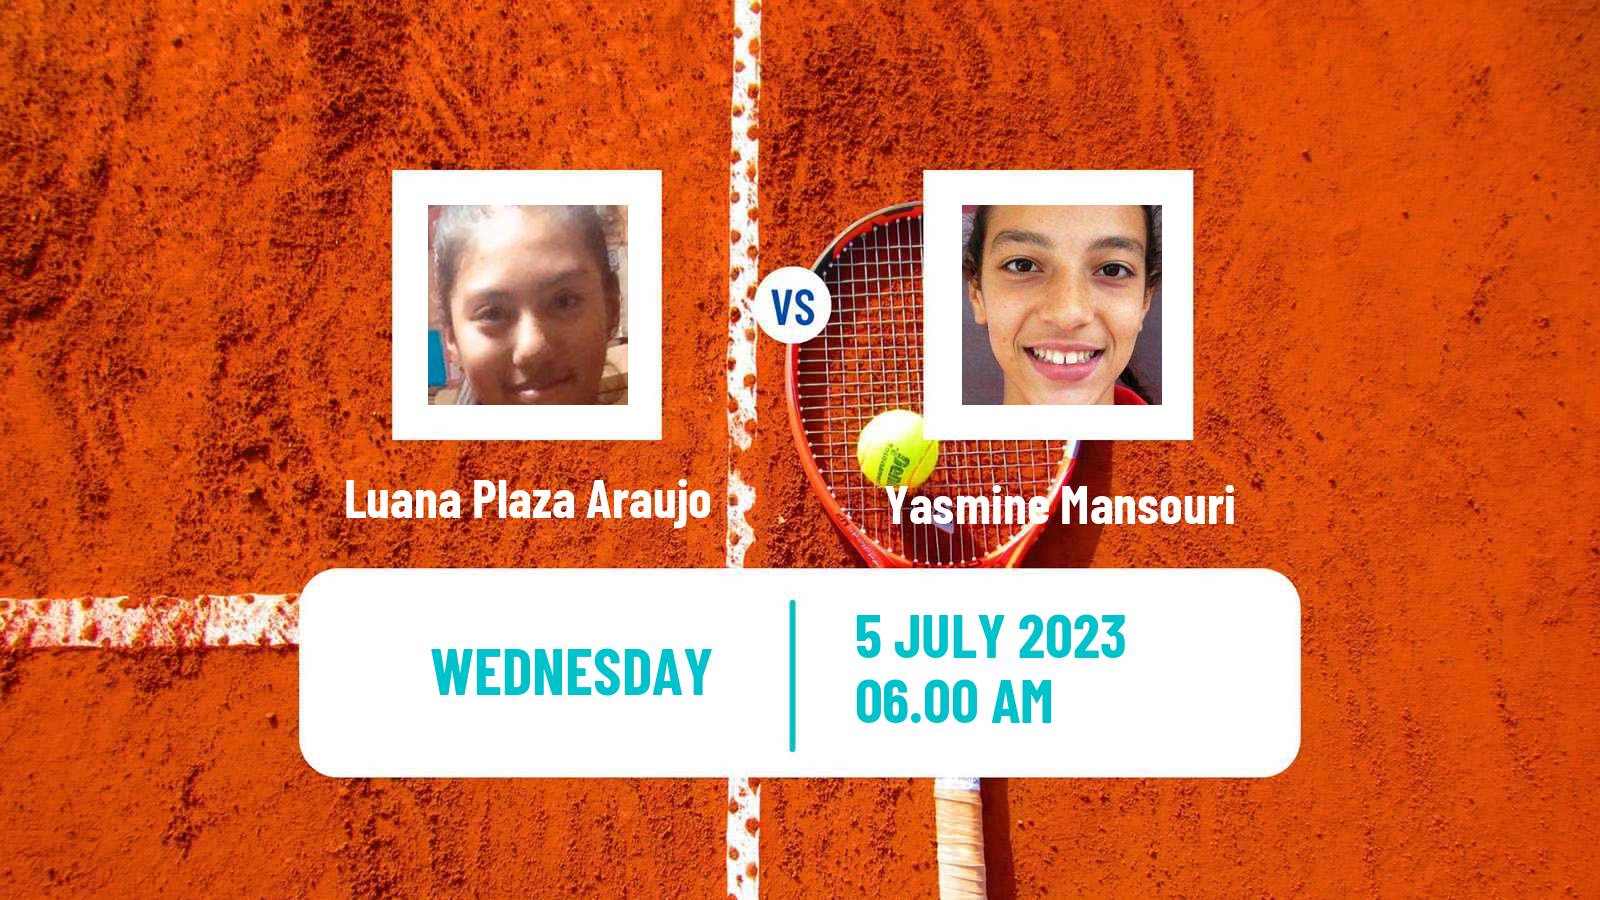 Tennis ITF W25 Cantanhede Women Luana Plaza Araujo - Yasmine Mansouri